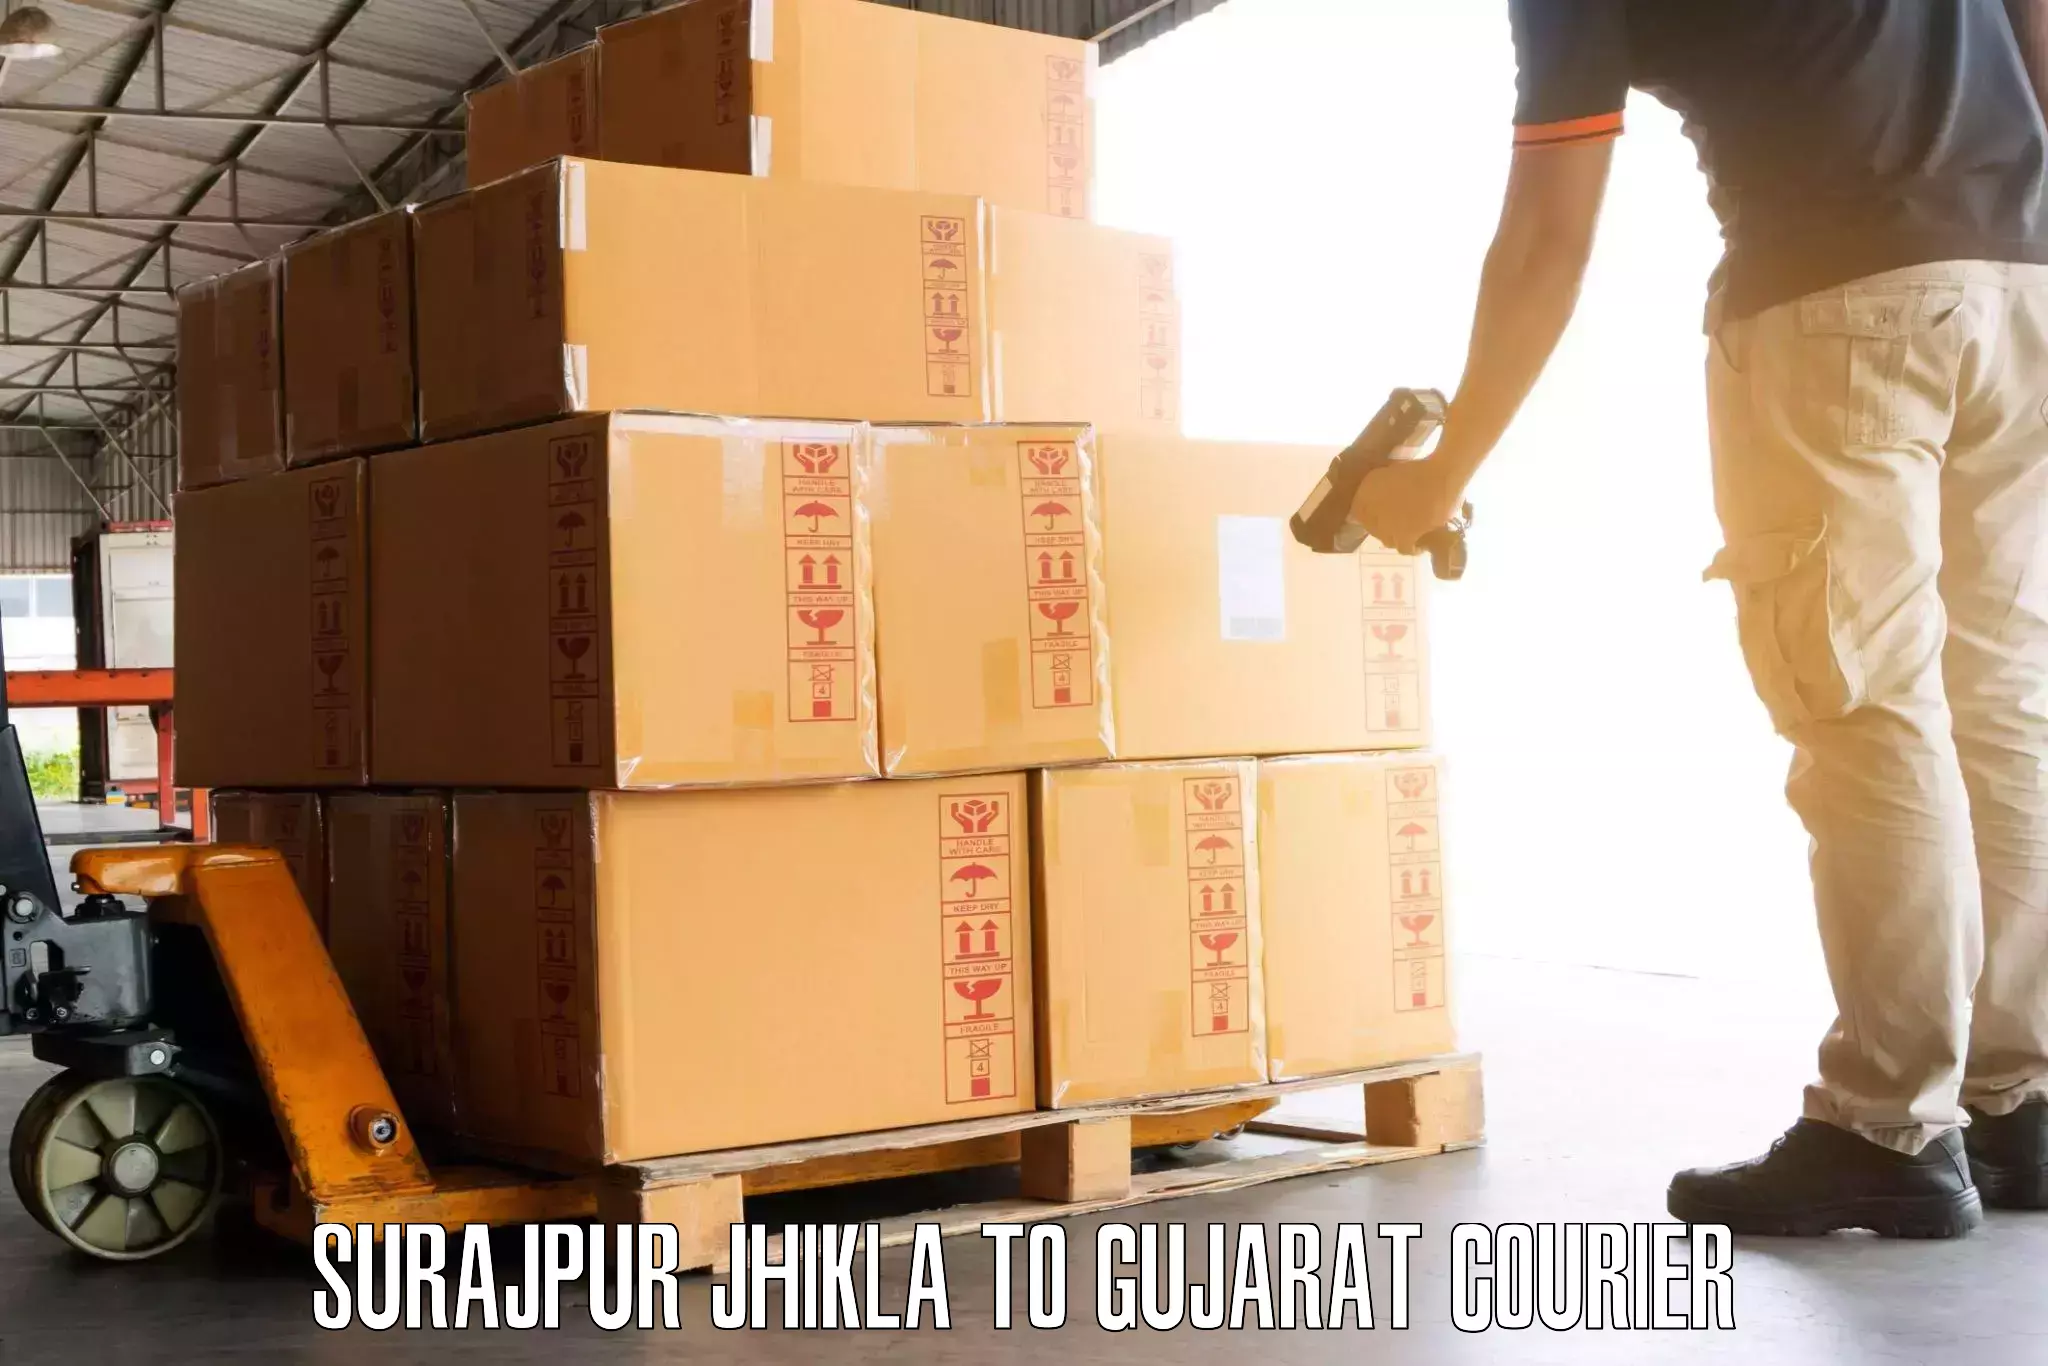 Luggage delivery app Surajpur Jhikla to Gujarat